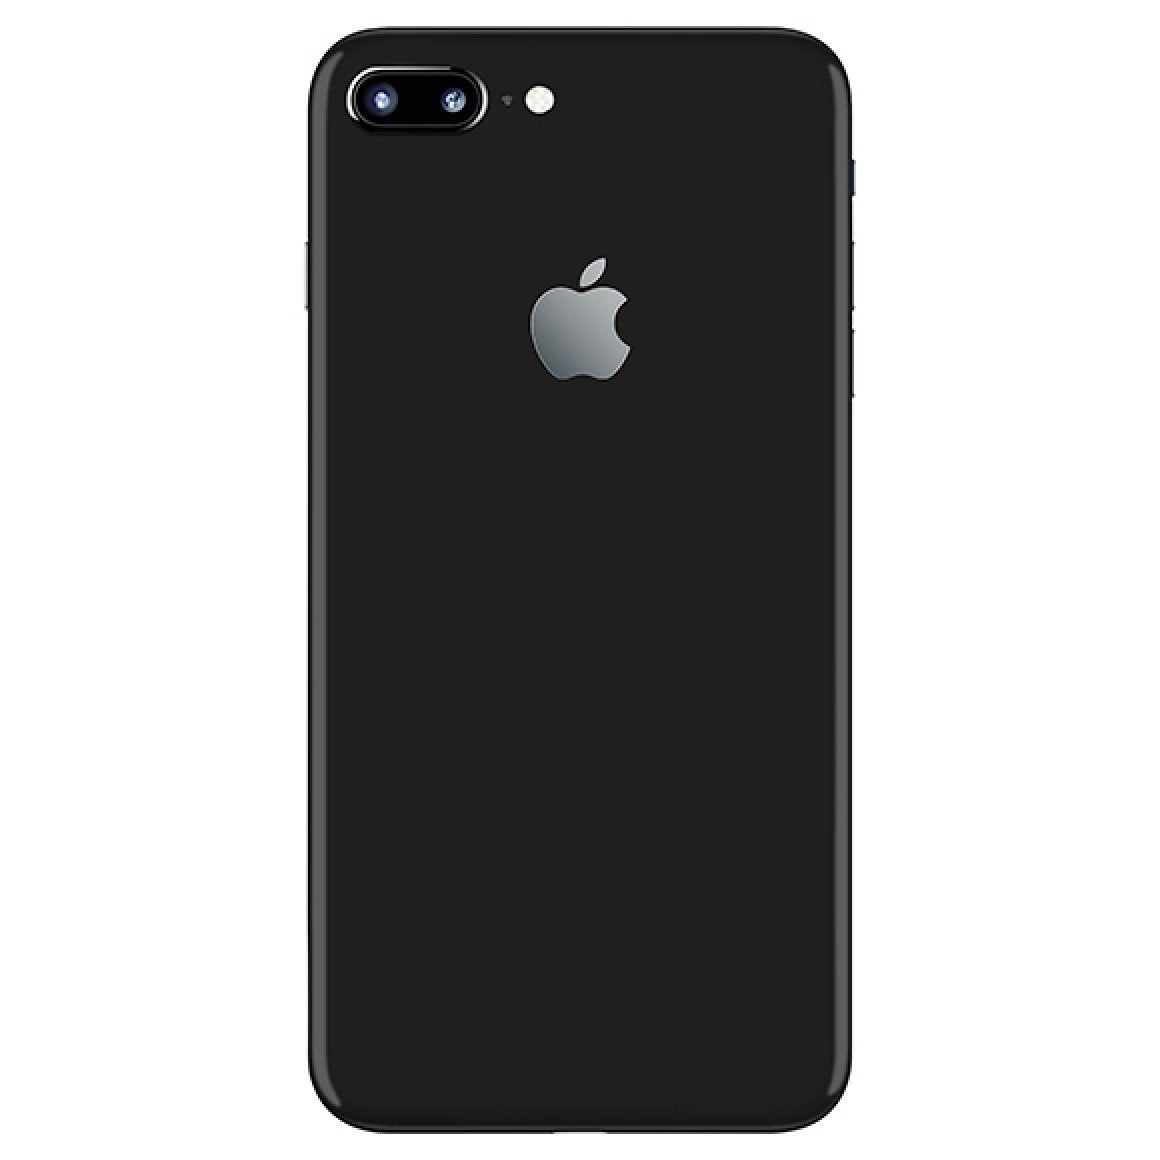 iPhone 7 Plus Grade 'D' Phones